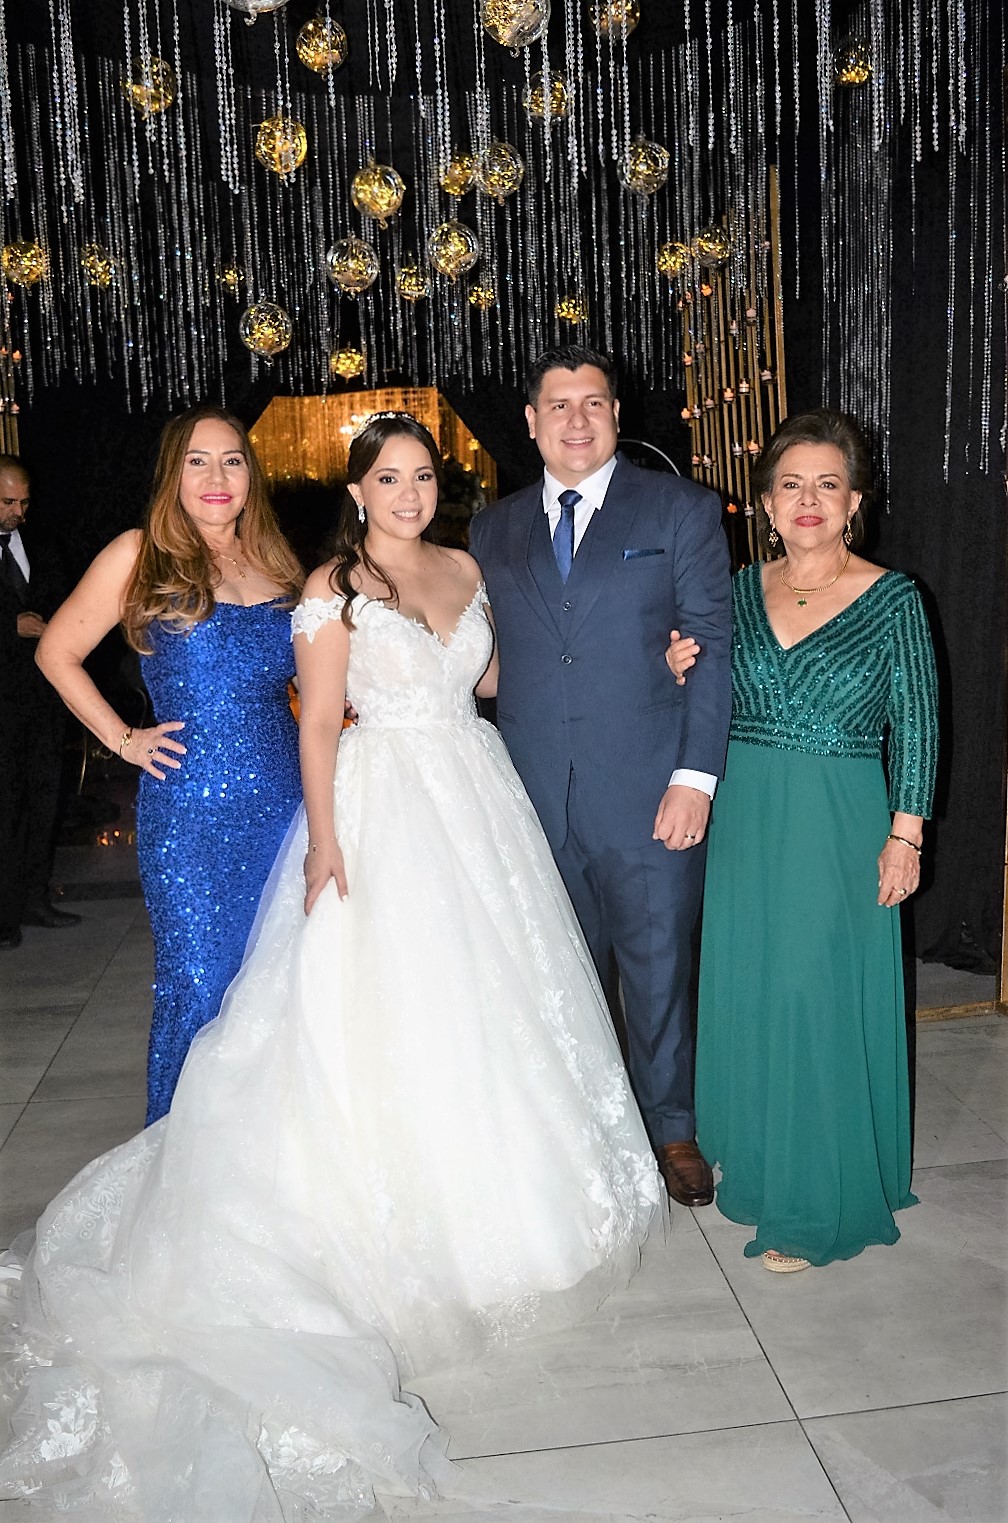 Darío Irías Turcios y Paola Mancía se dan el “sí, quiero” en una boda inolvidable